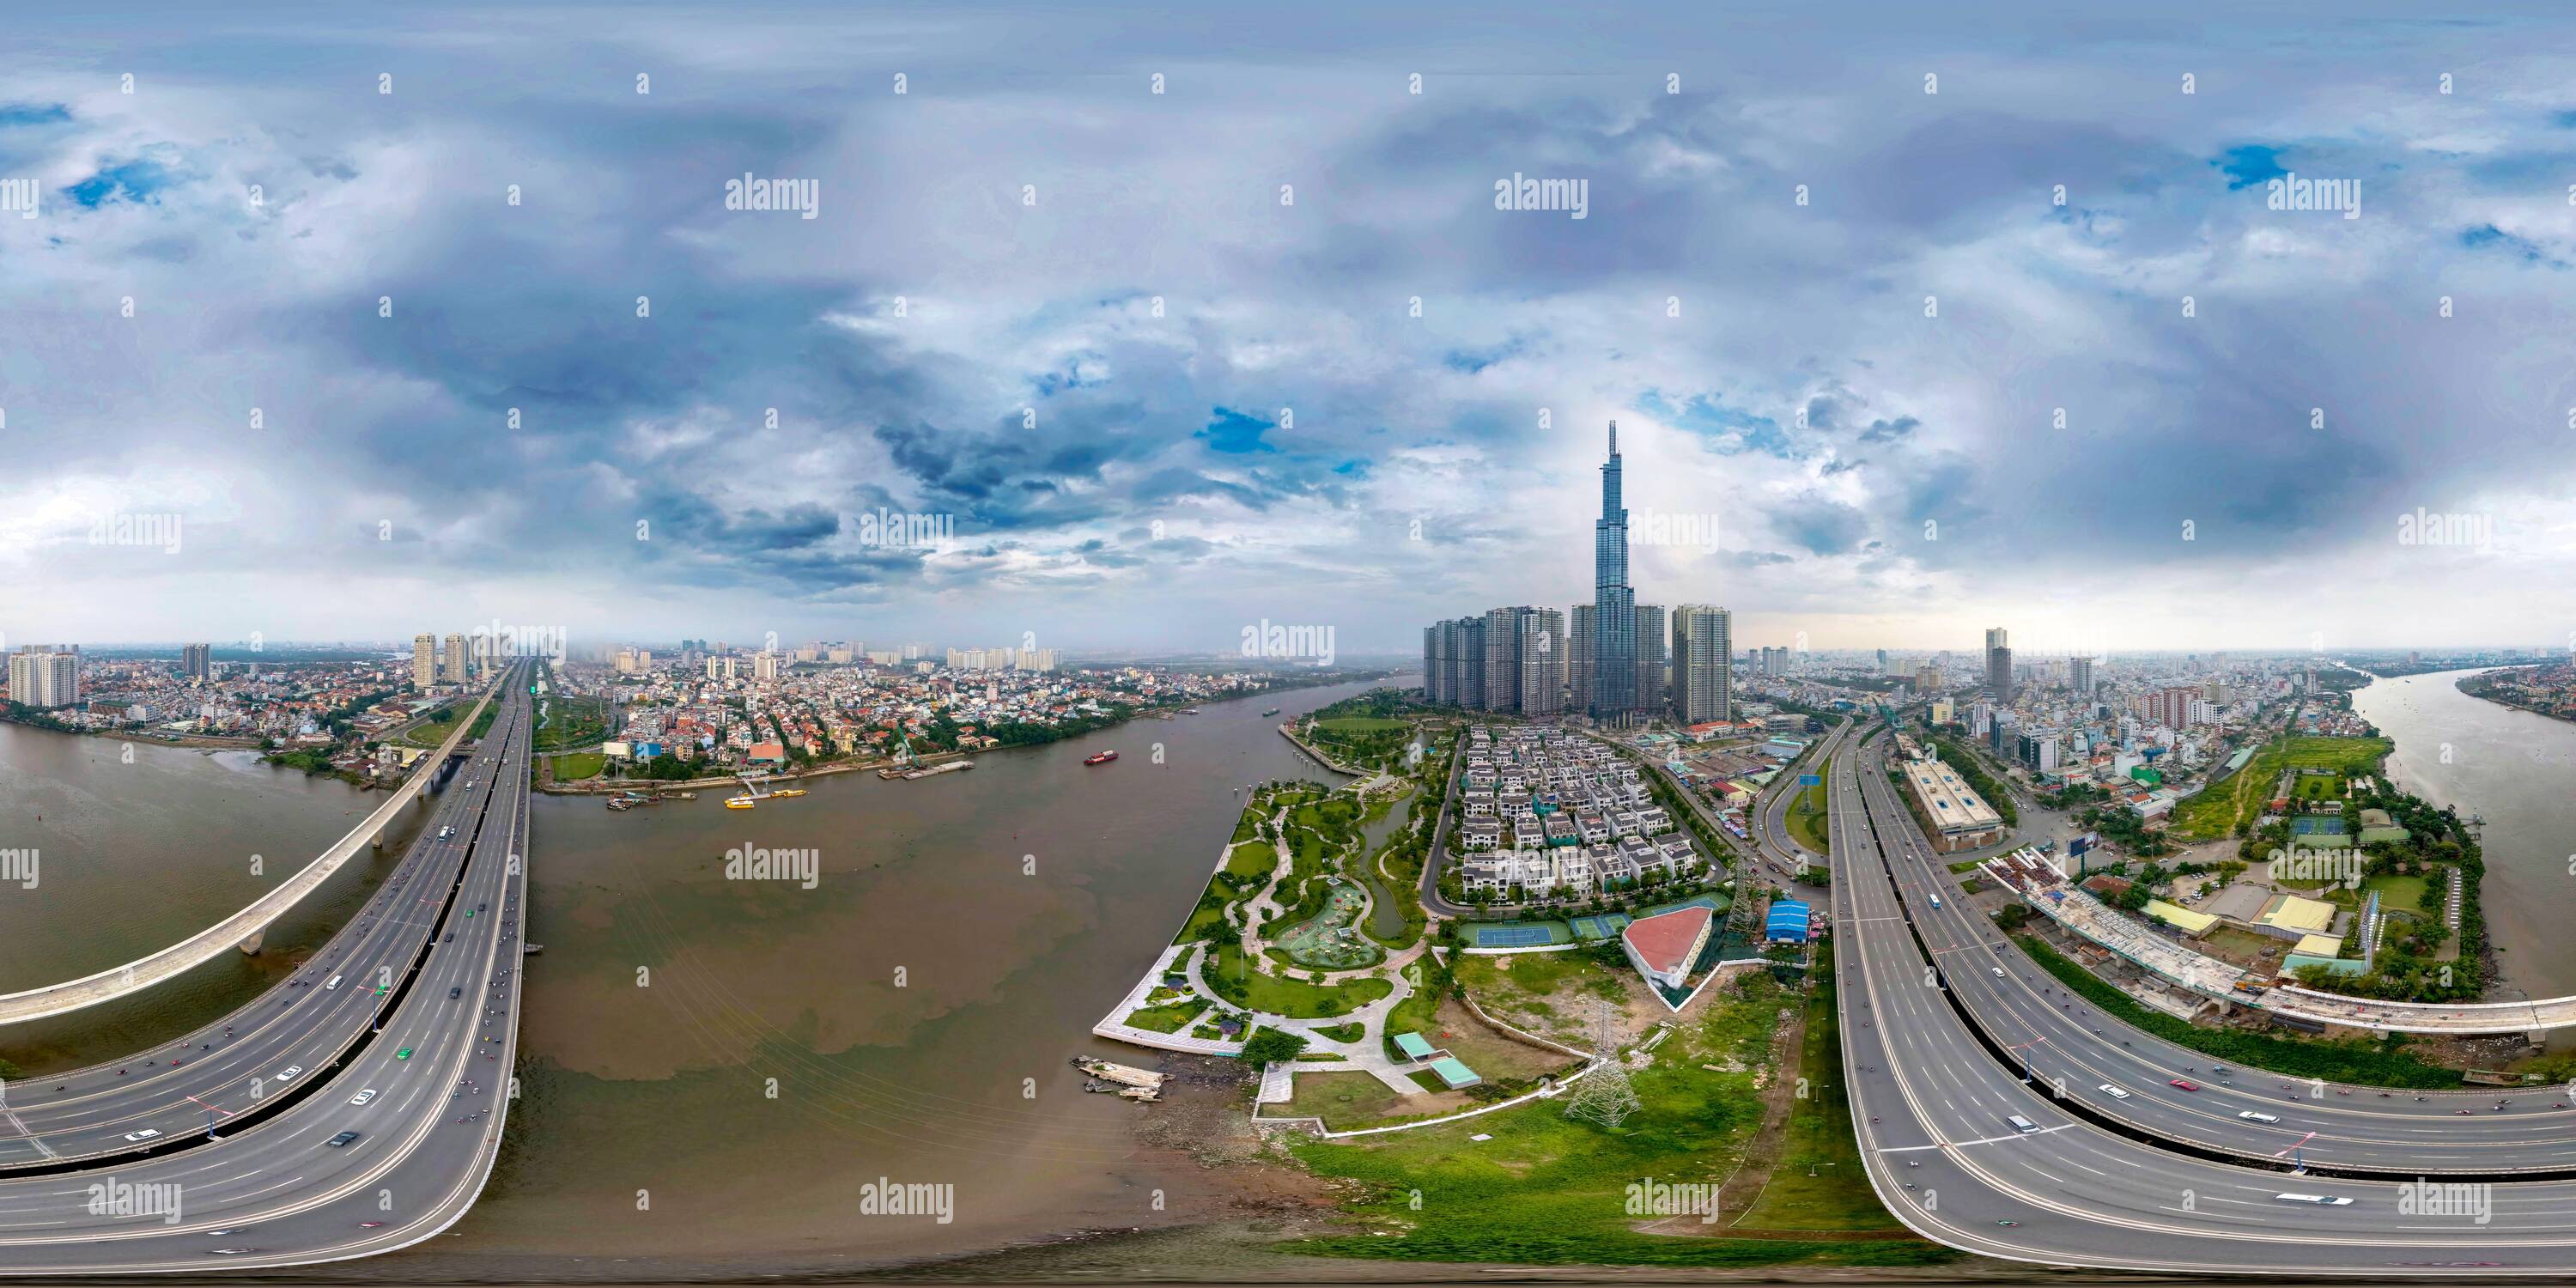 Vista panorámica en 360 grados de Aérea: 360 vista panorámica sobre el puente de Saigón, (HCMC), Vietnam. Todo el tráfico utiliza este puente de 10 carriles al otro lado del río Saigon con Landmark visible.